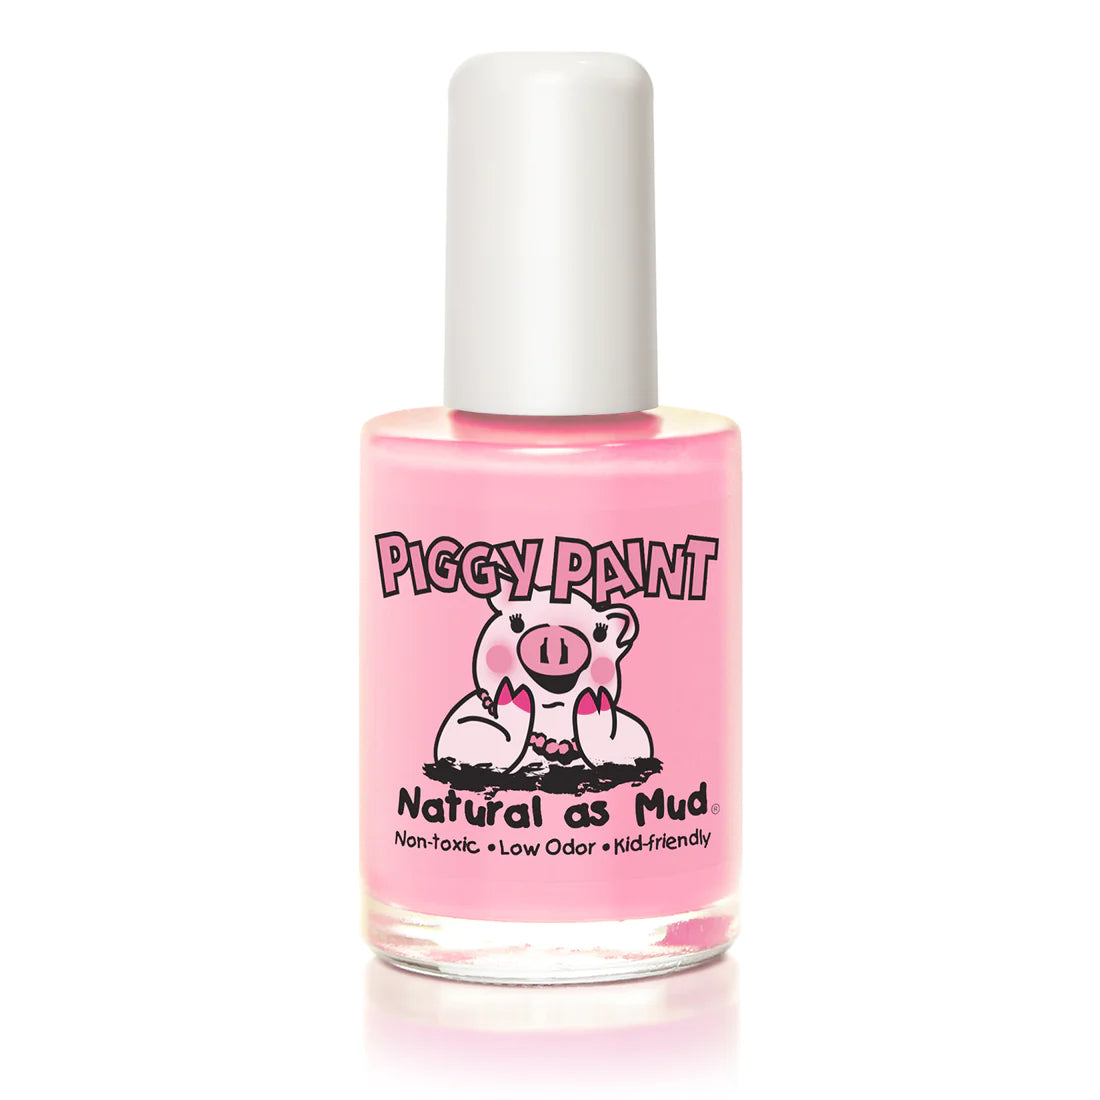 Muddles the Pig Piggy Paint Nail Polish